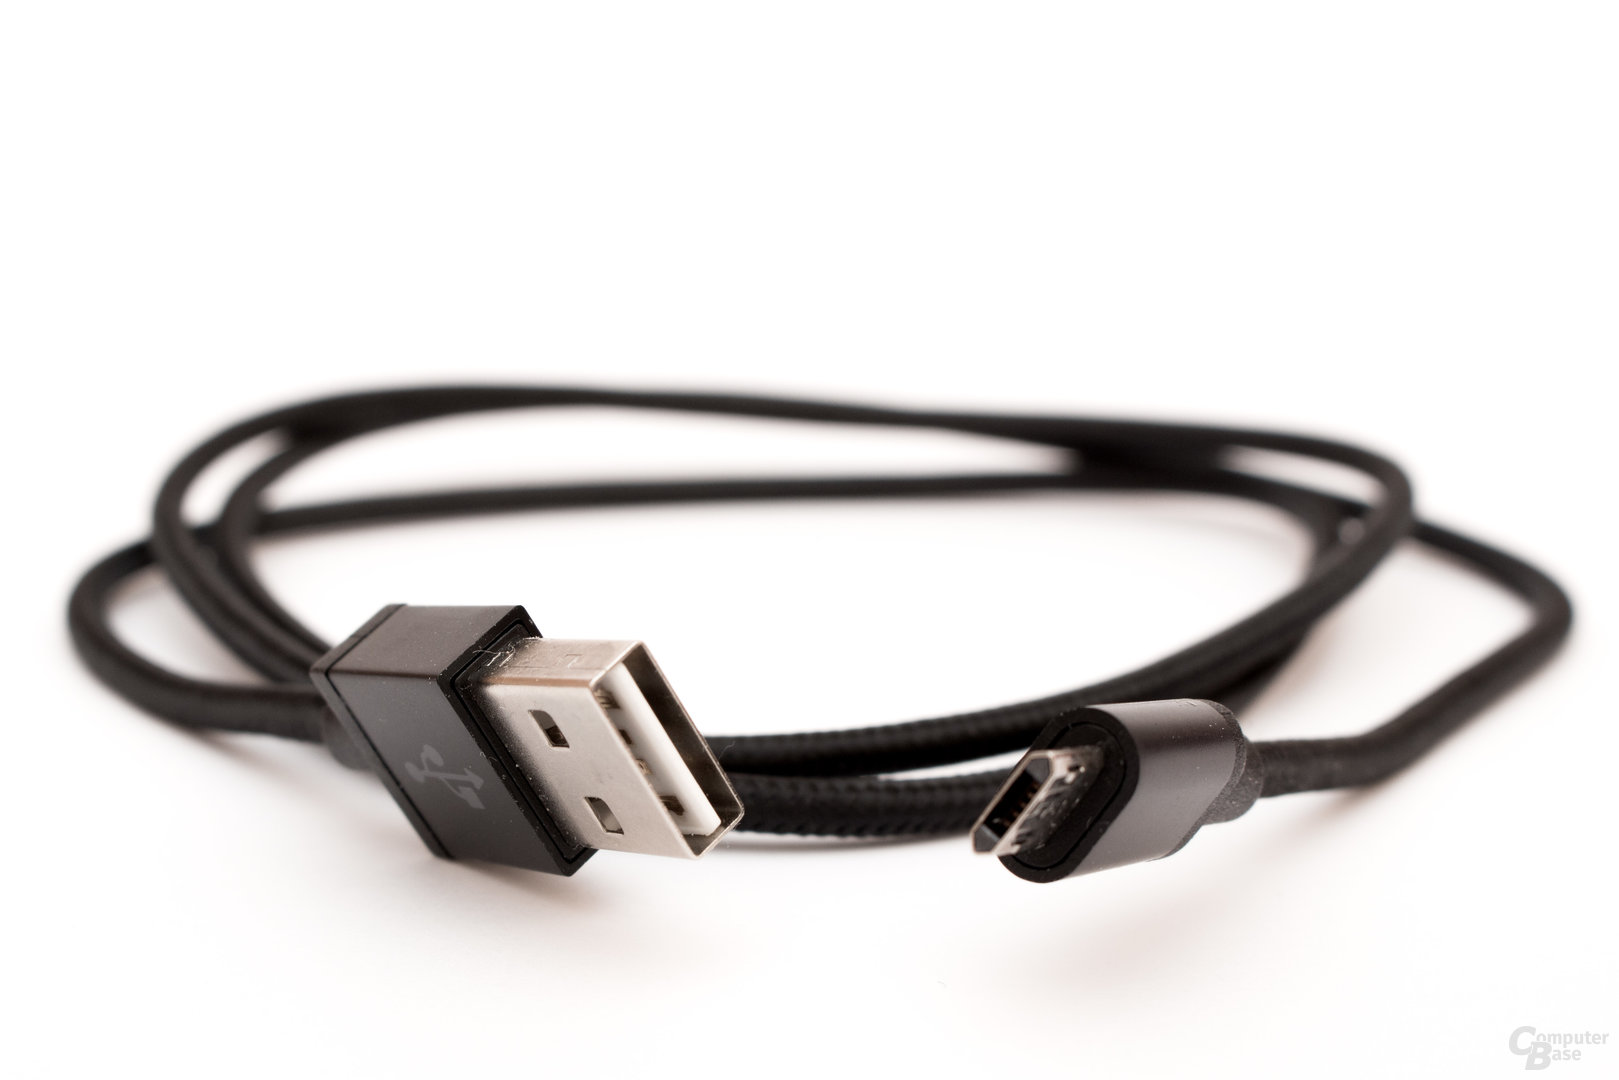 USB-Kabel mit Wendeanschluss – keine wirkliche Neuerung